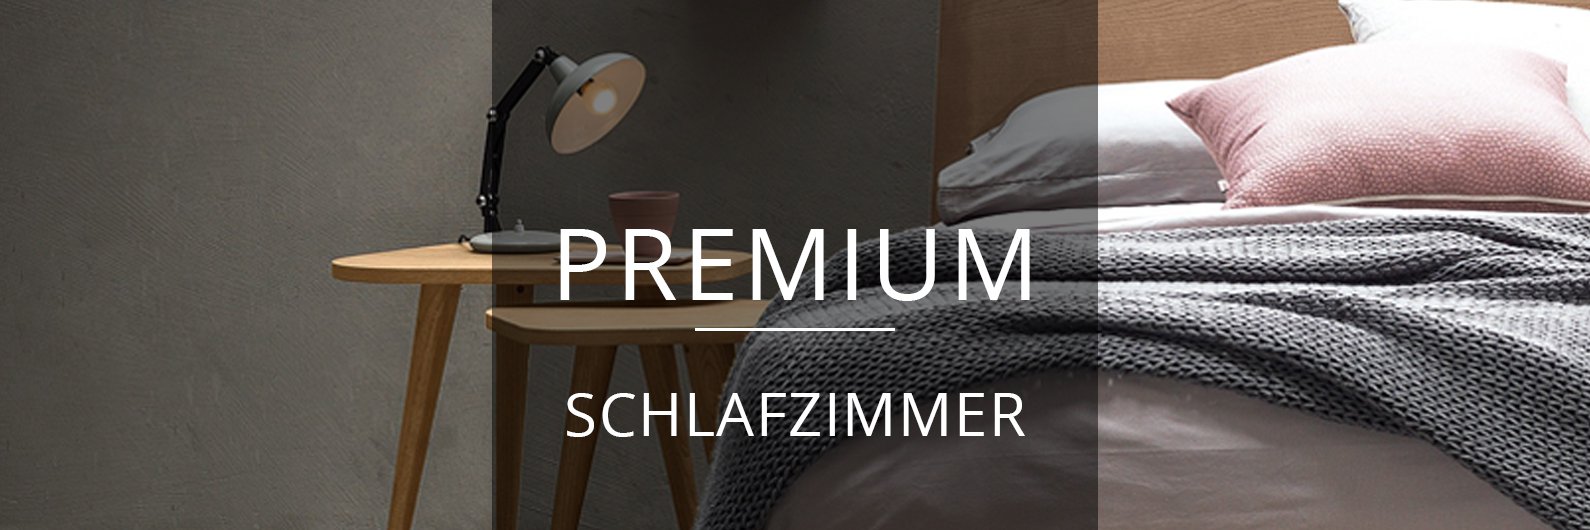 Premium Schlafzimmer